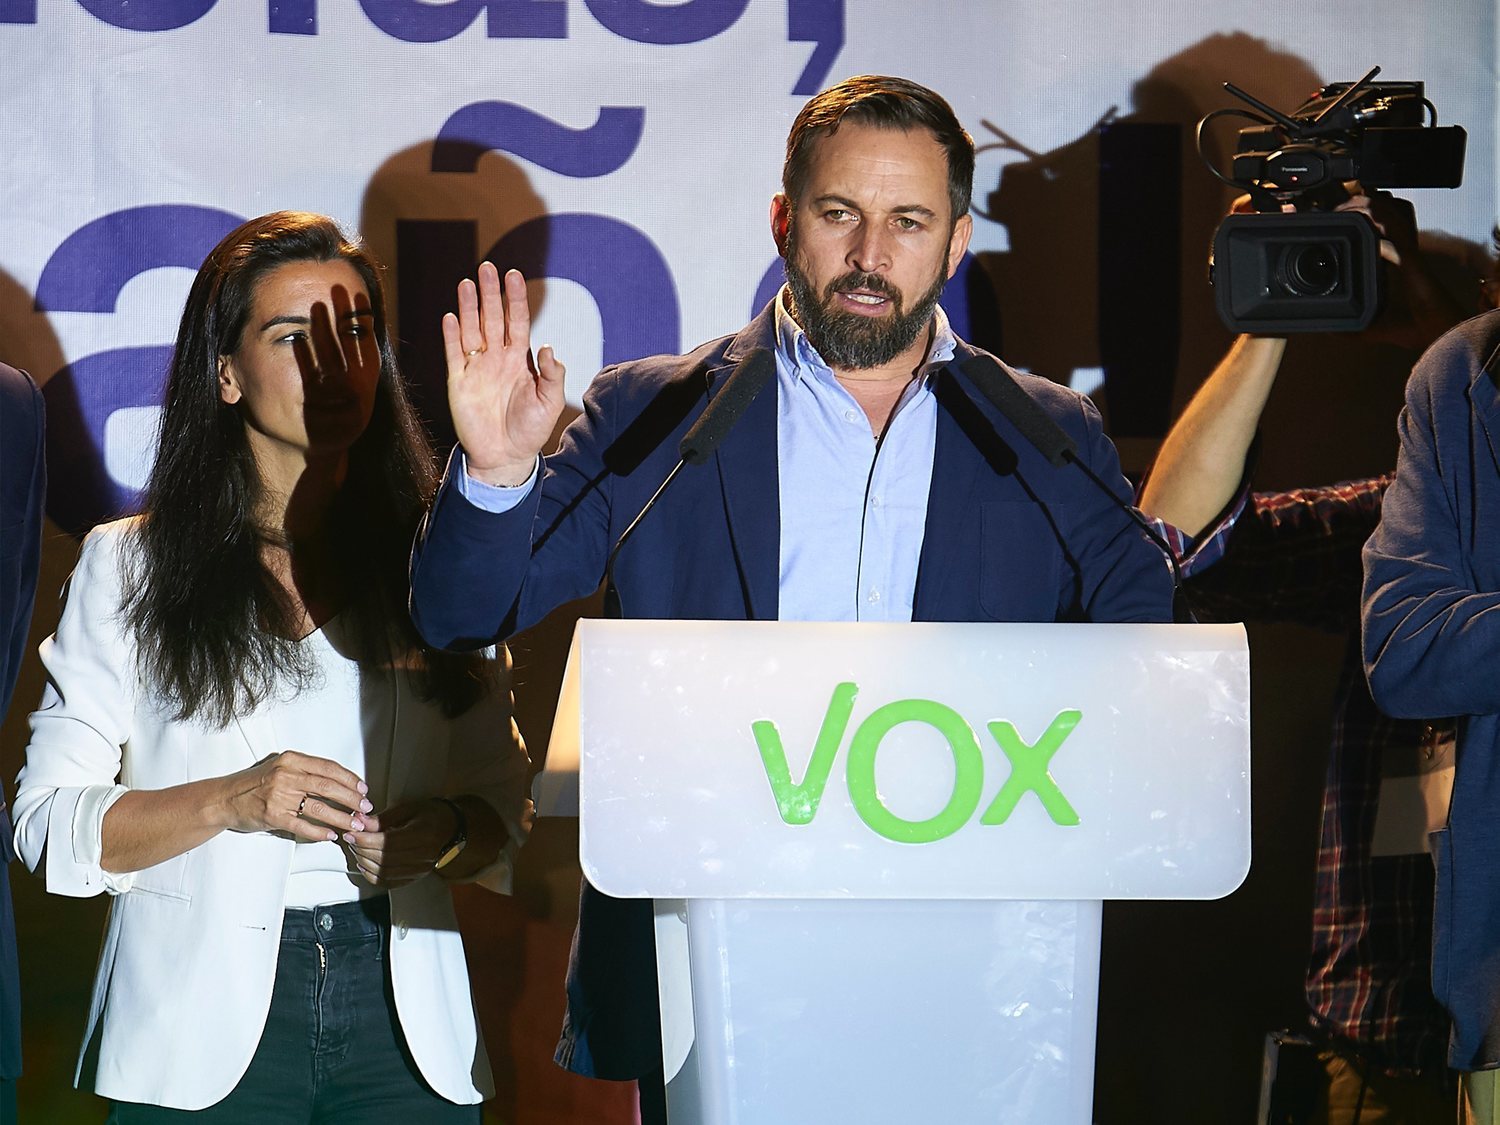 Exdirigentes de VOX cargan contra Abascal y su 'chiringuito': "No creen en la democracia"